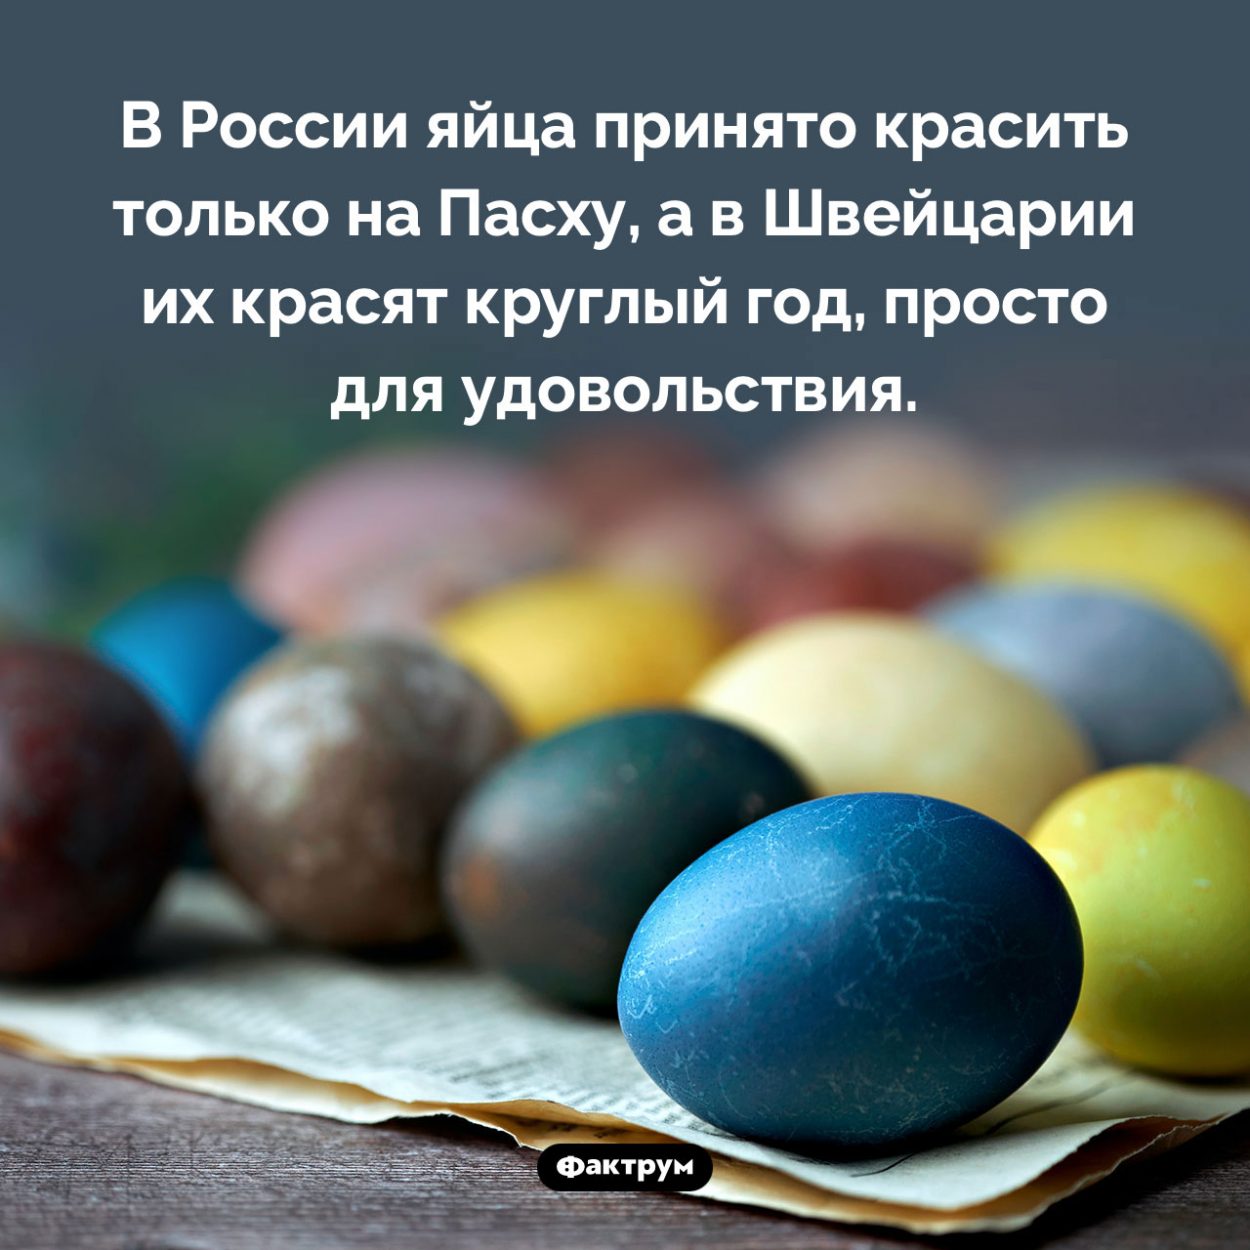 Разноцветные швейцарские яйца. В России яйца принято красить только на Пасху, а в Швейцарии их красят круглый год, просто для удовольствия.